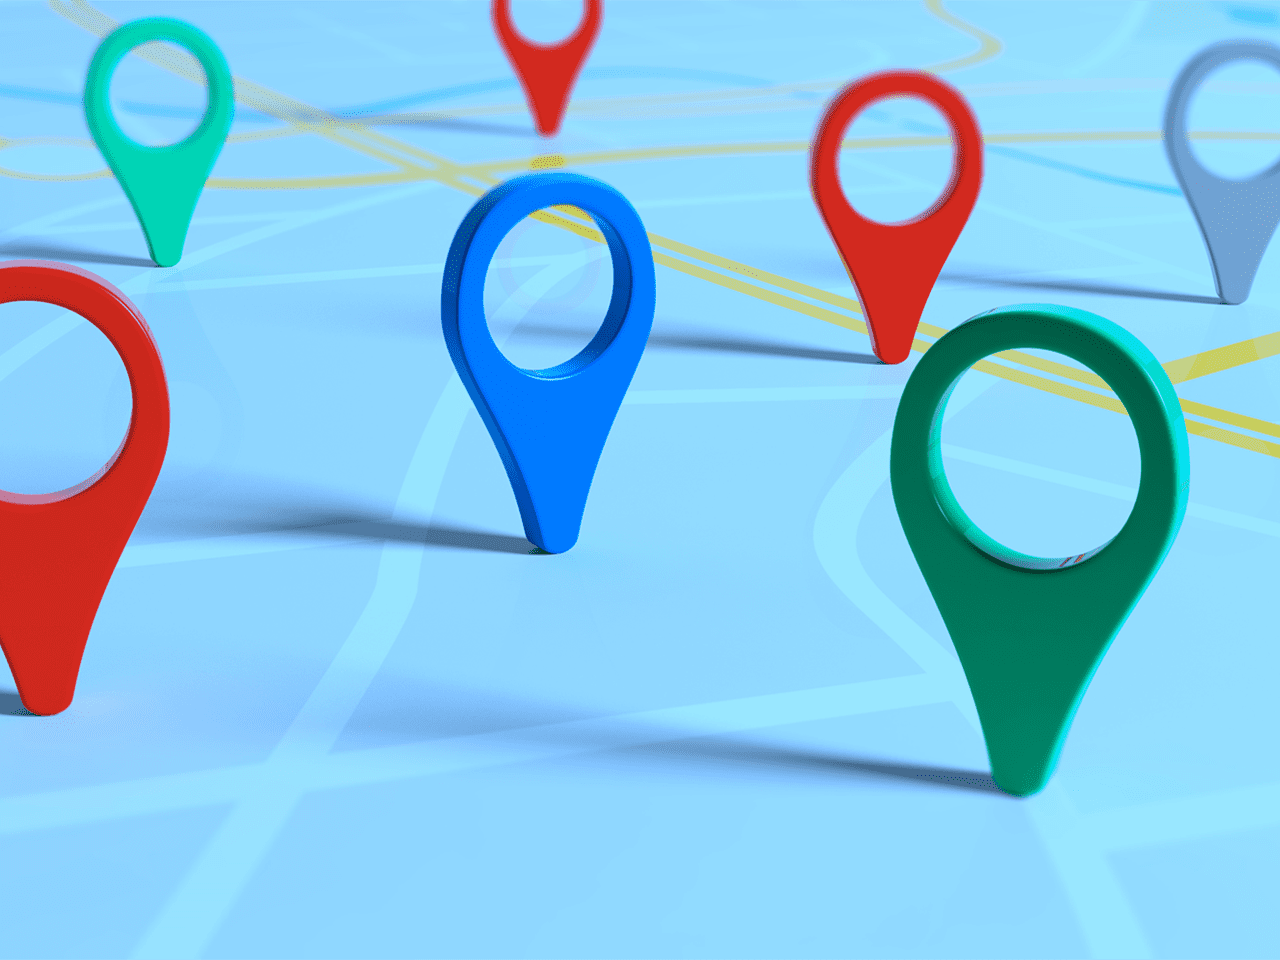 Google Maps sempre più social network, ora si possono "seguire" gli altri utenti